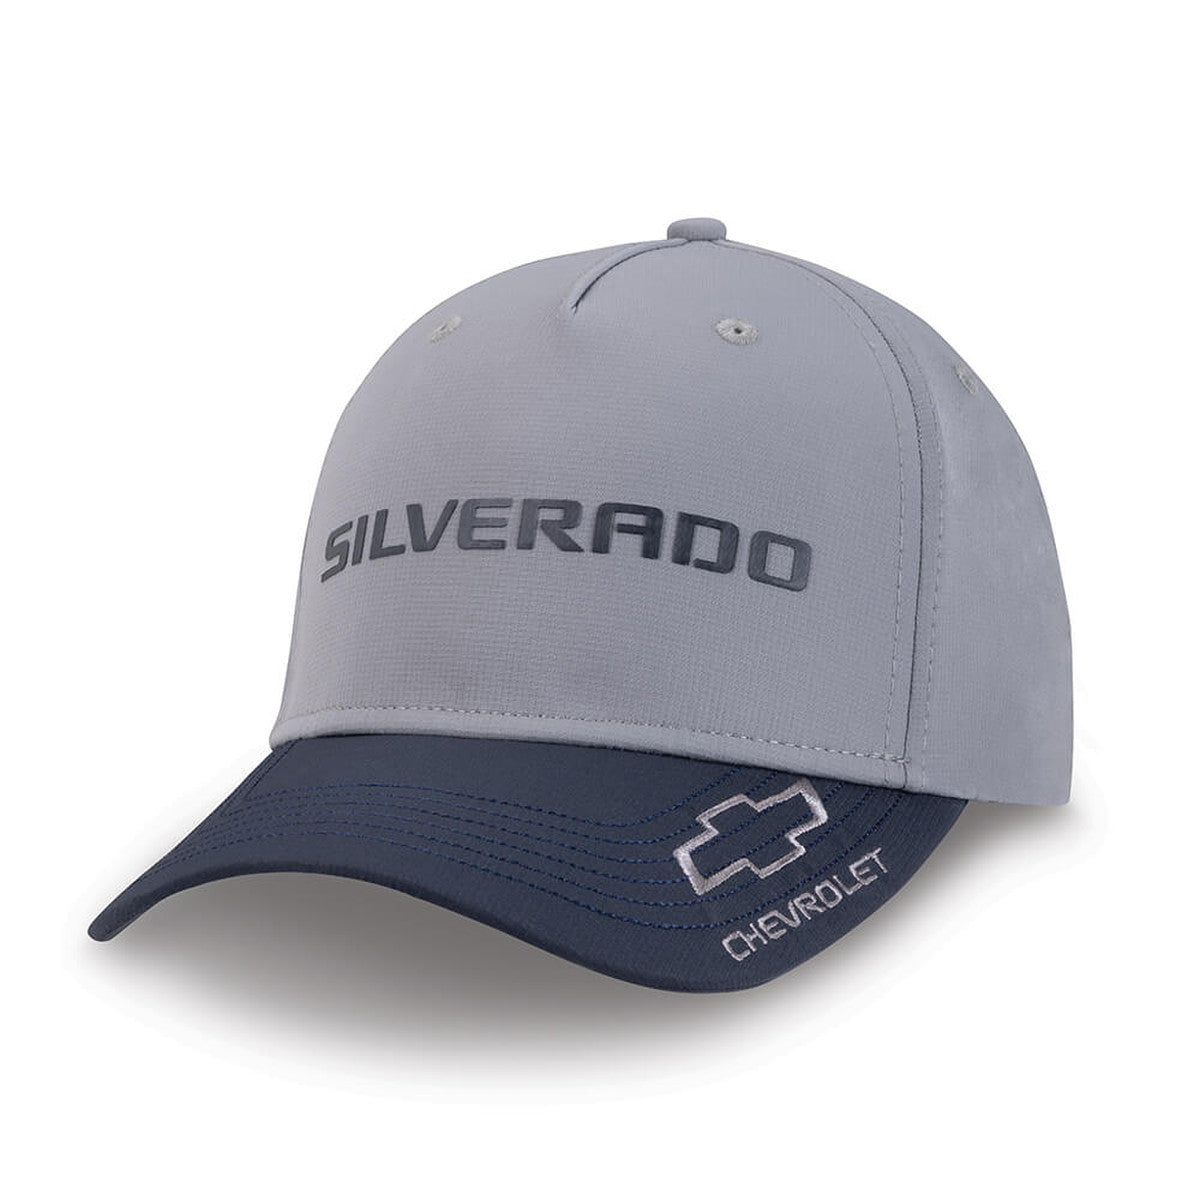 Silverado Microfiber Hat